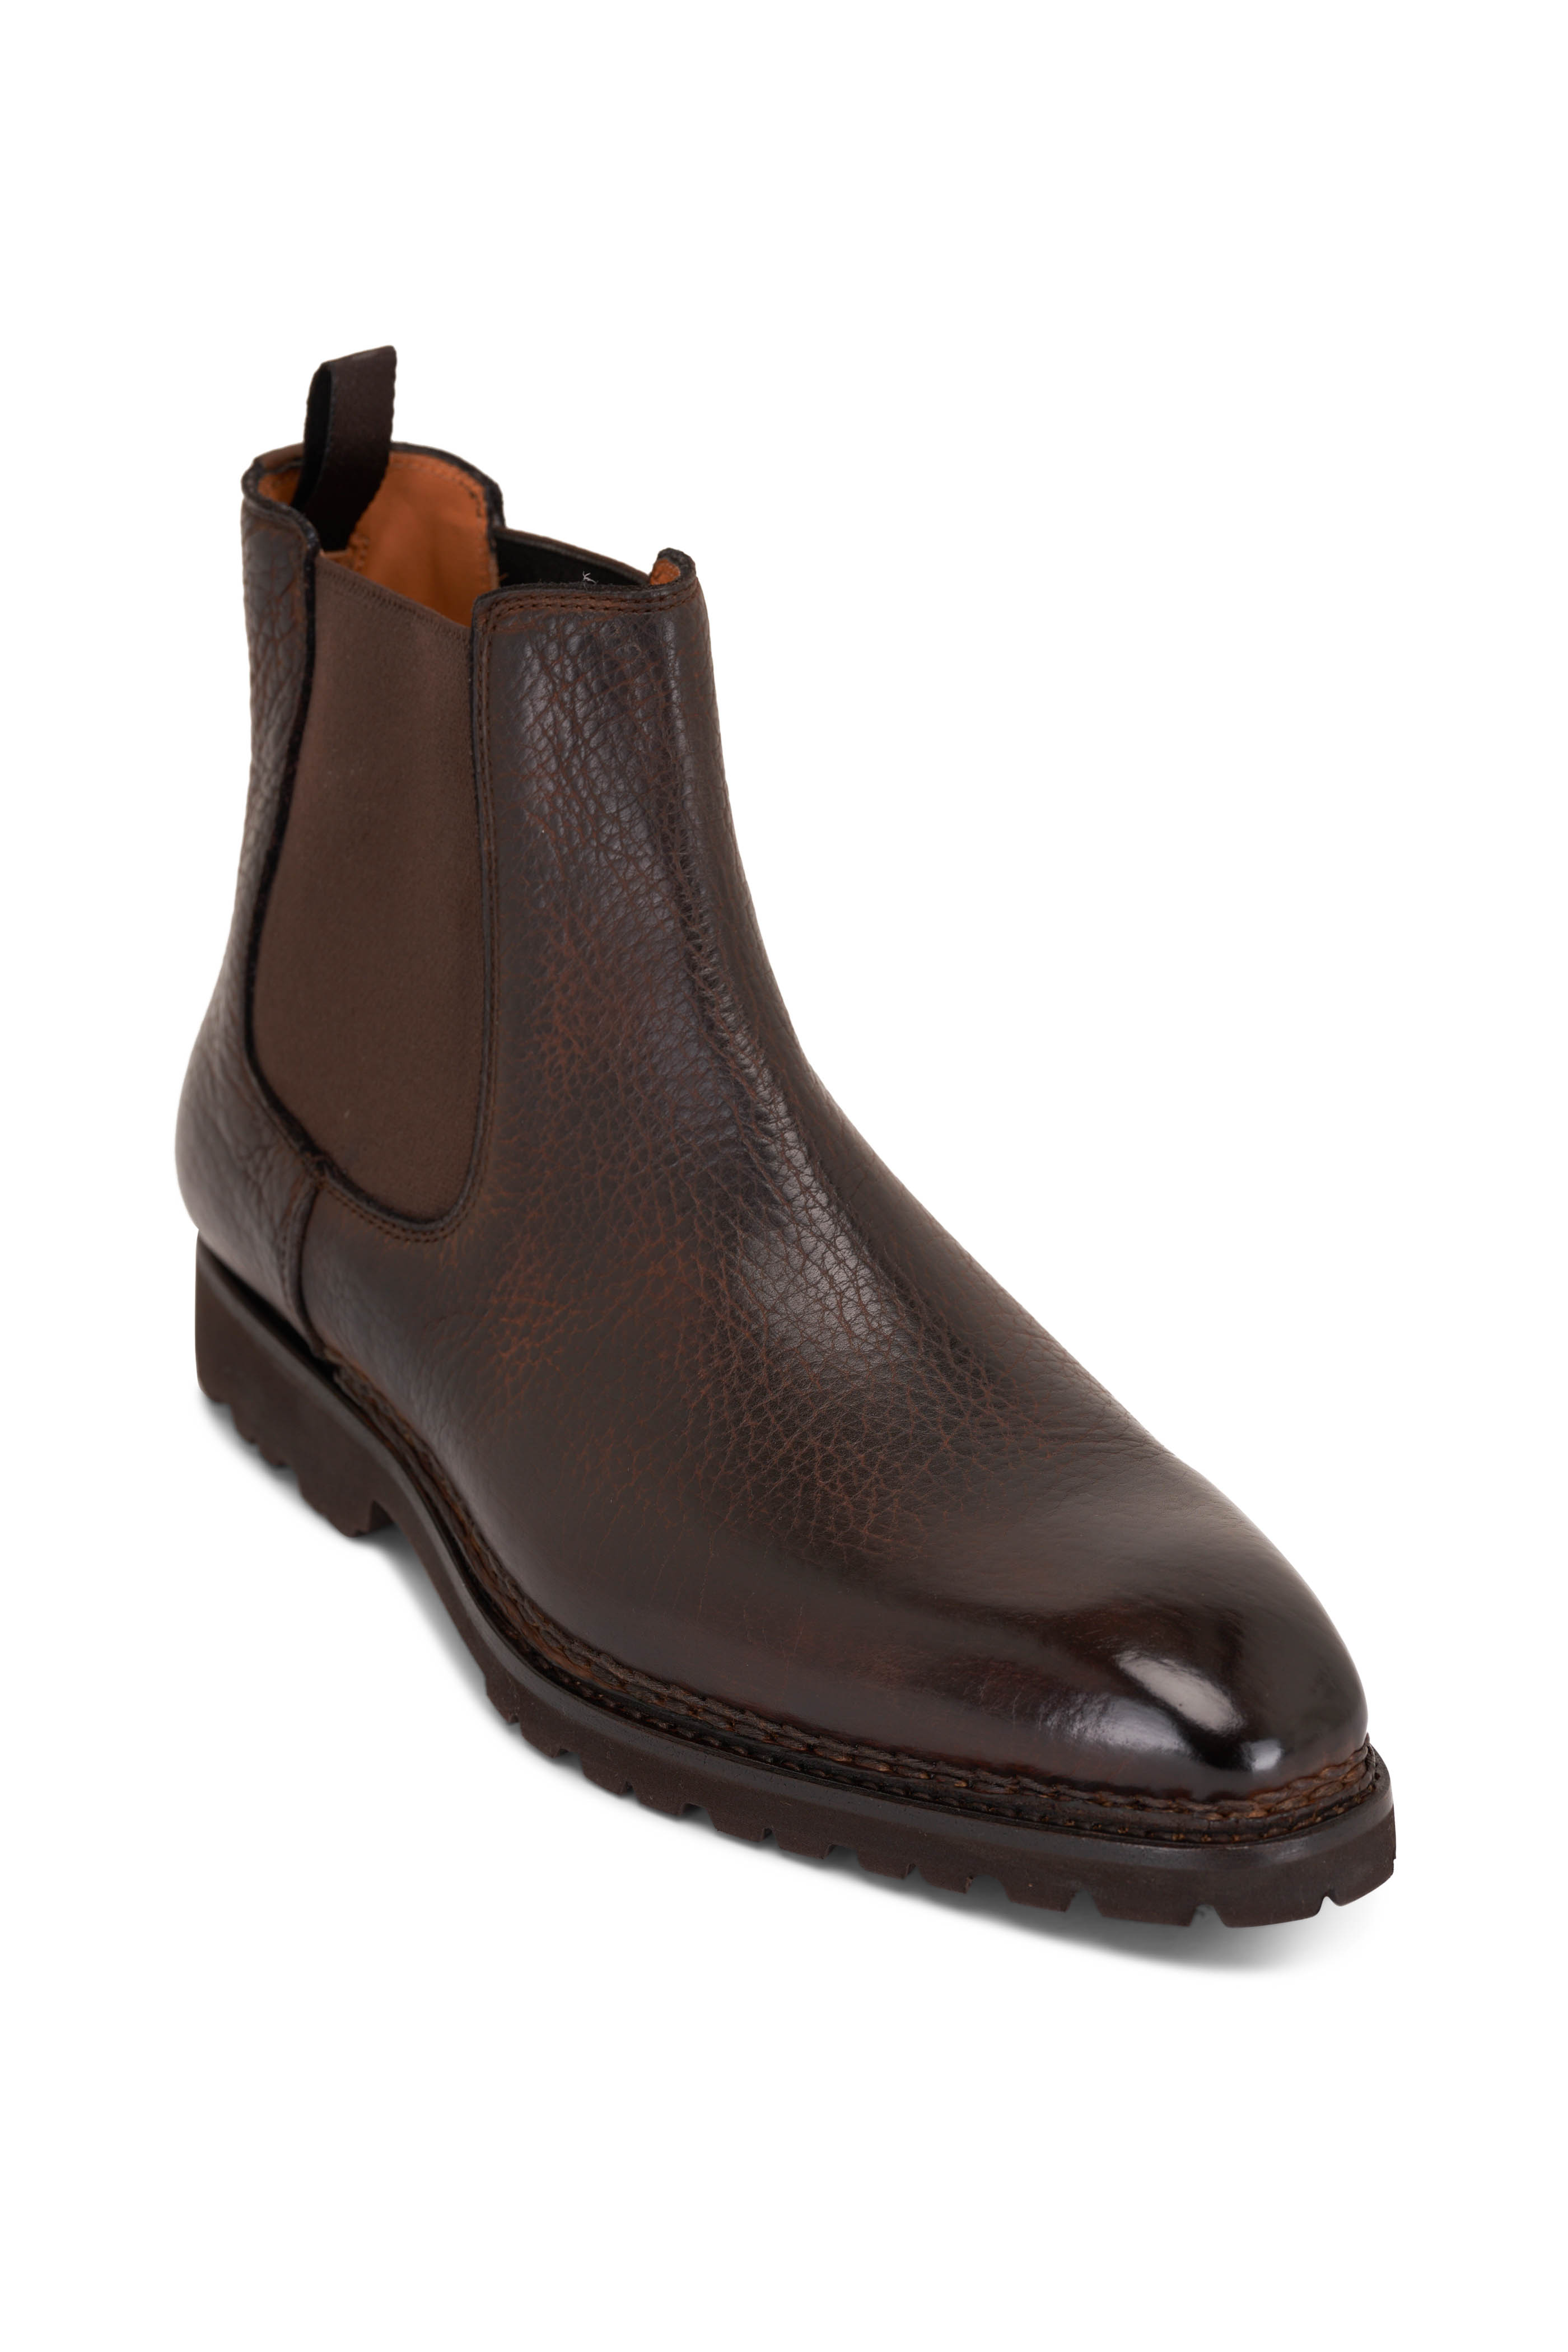 Brunico Marrone Intenso Brown - Boot Berluti Leather